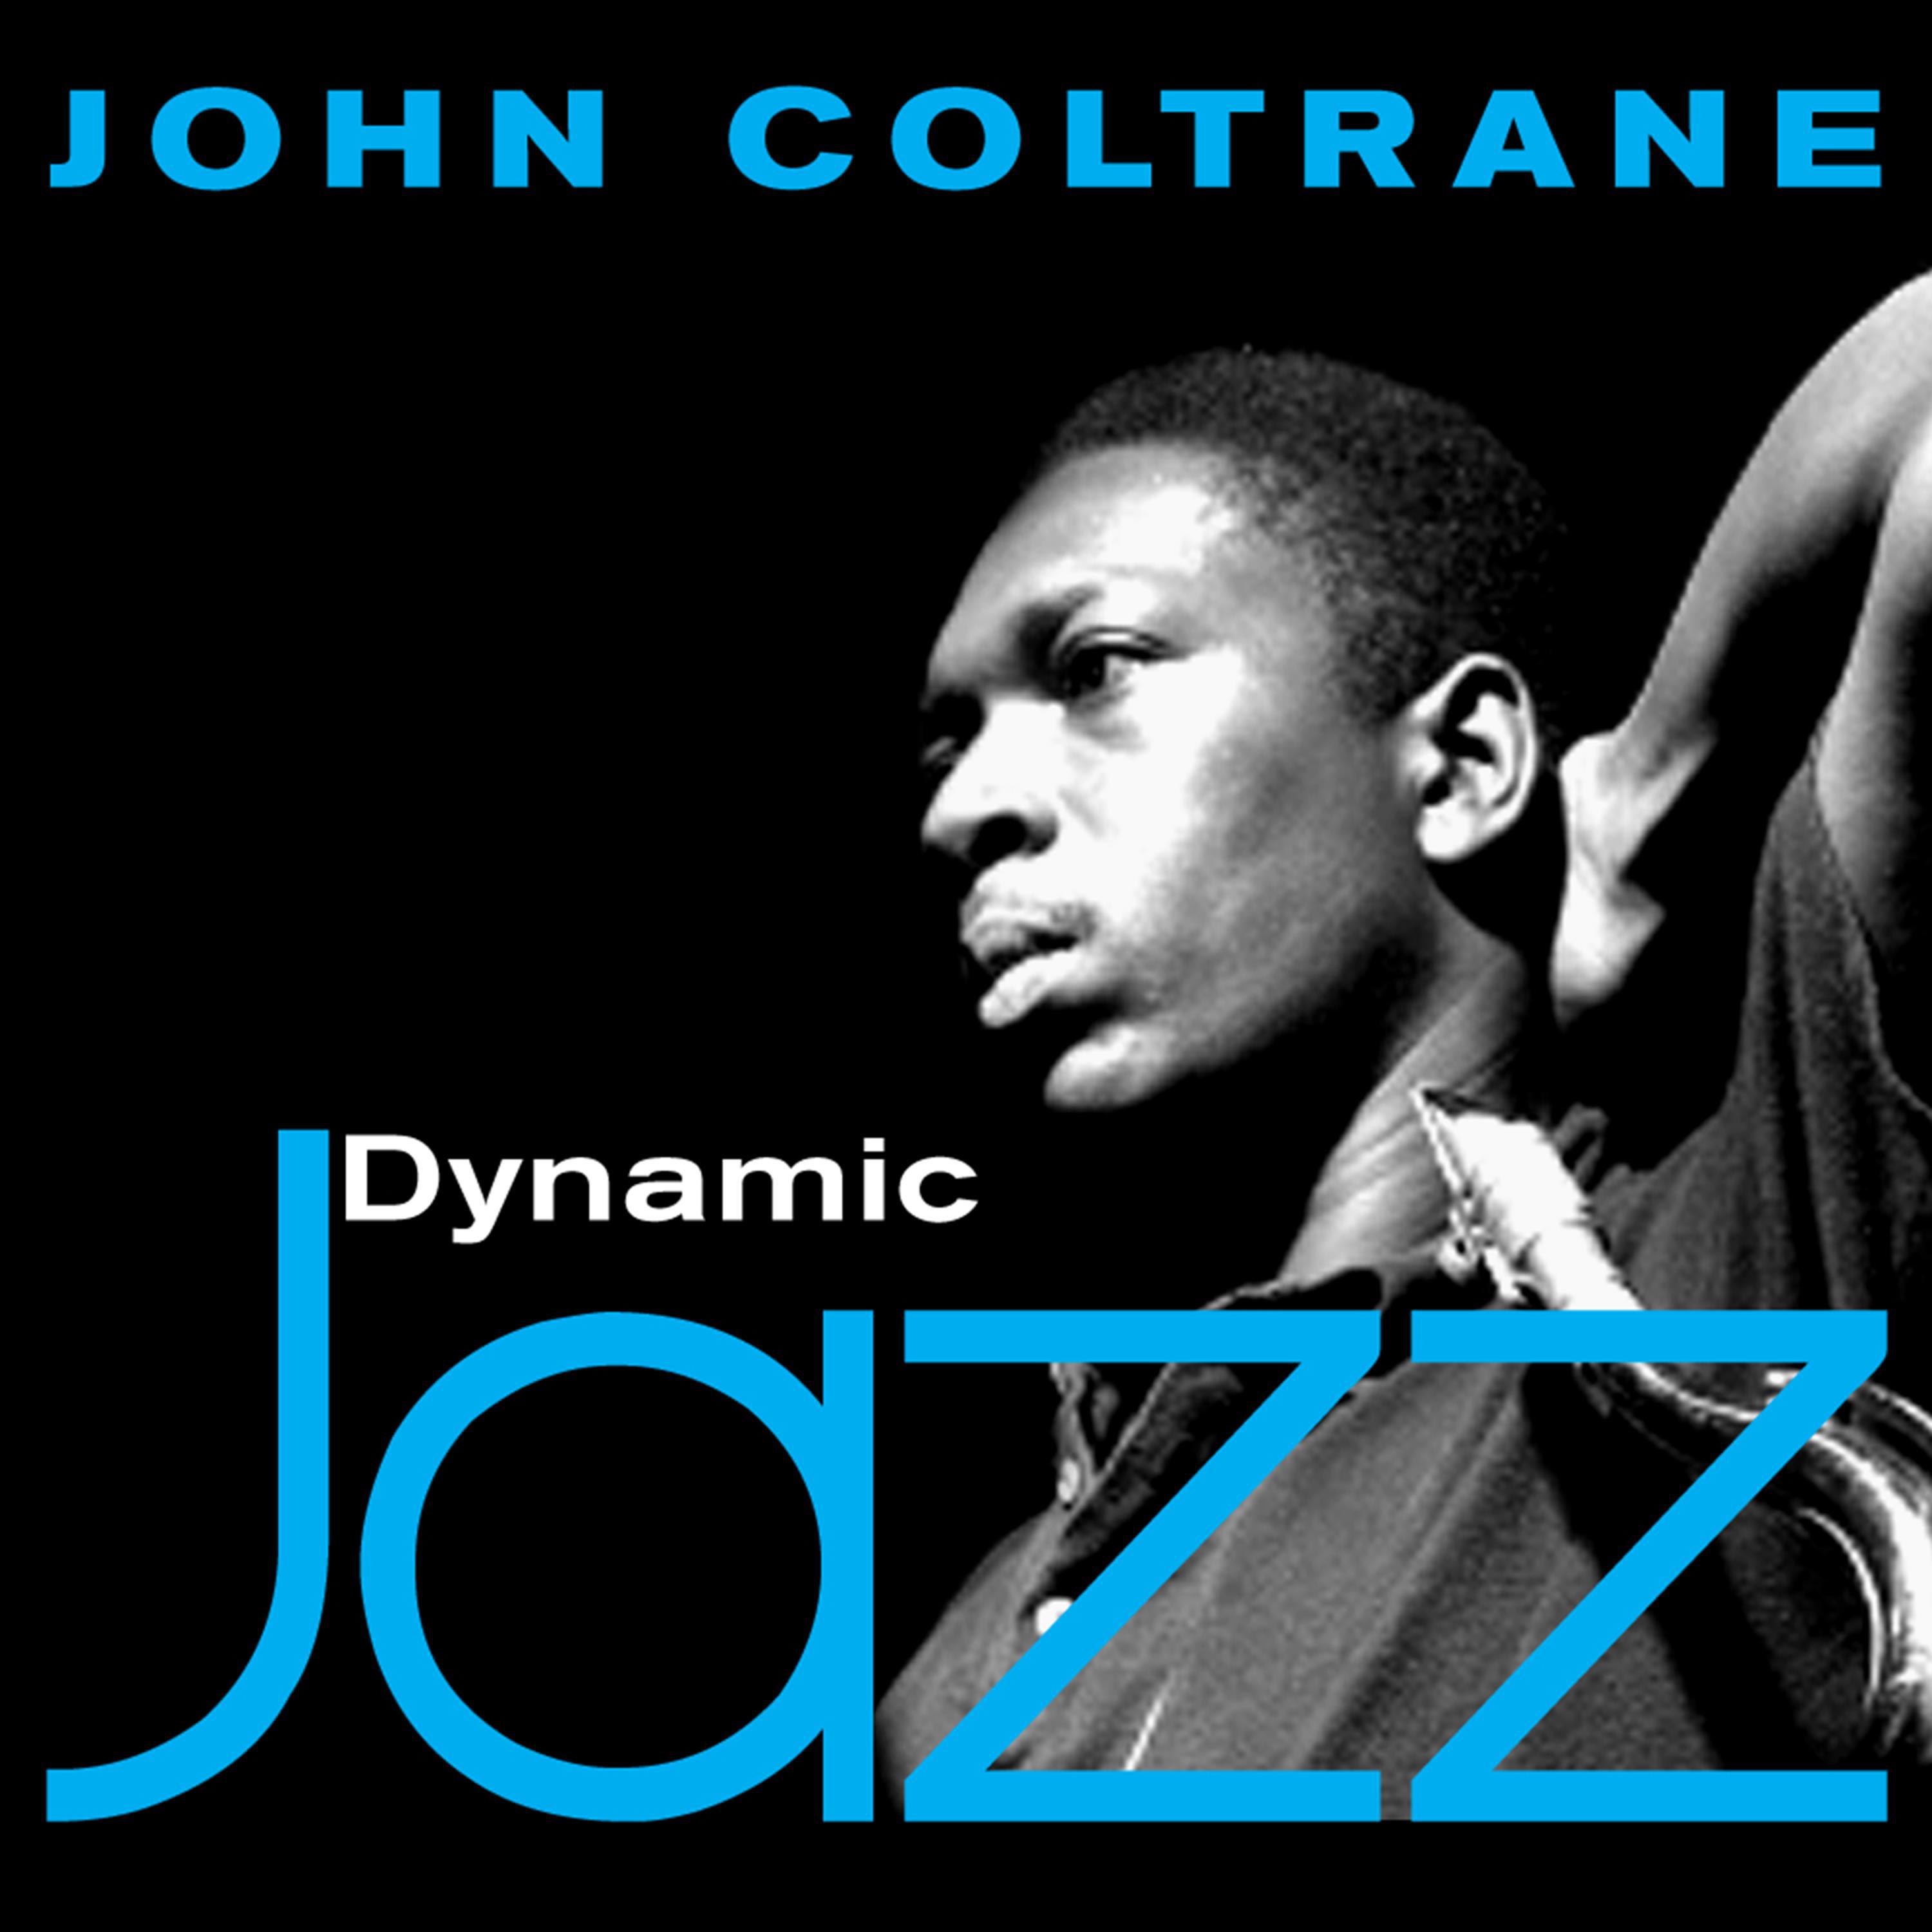 Dynamic Jazz - John Coltrane